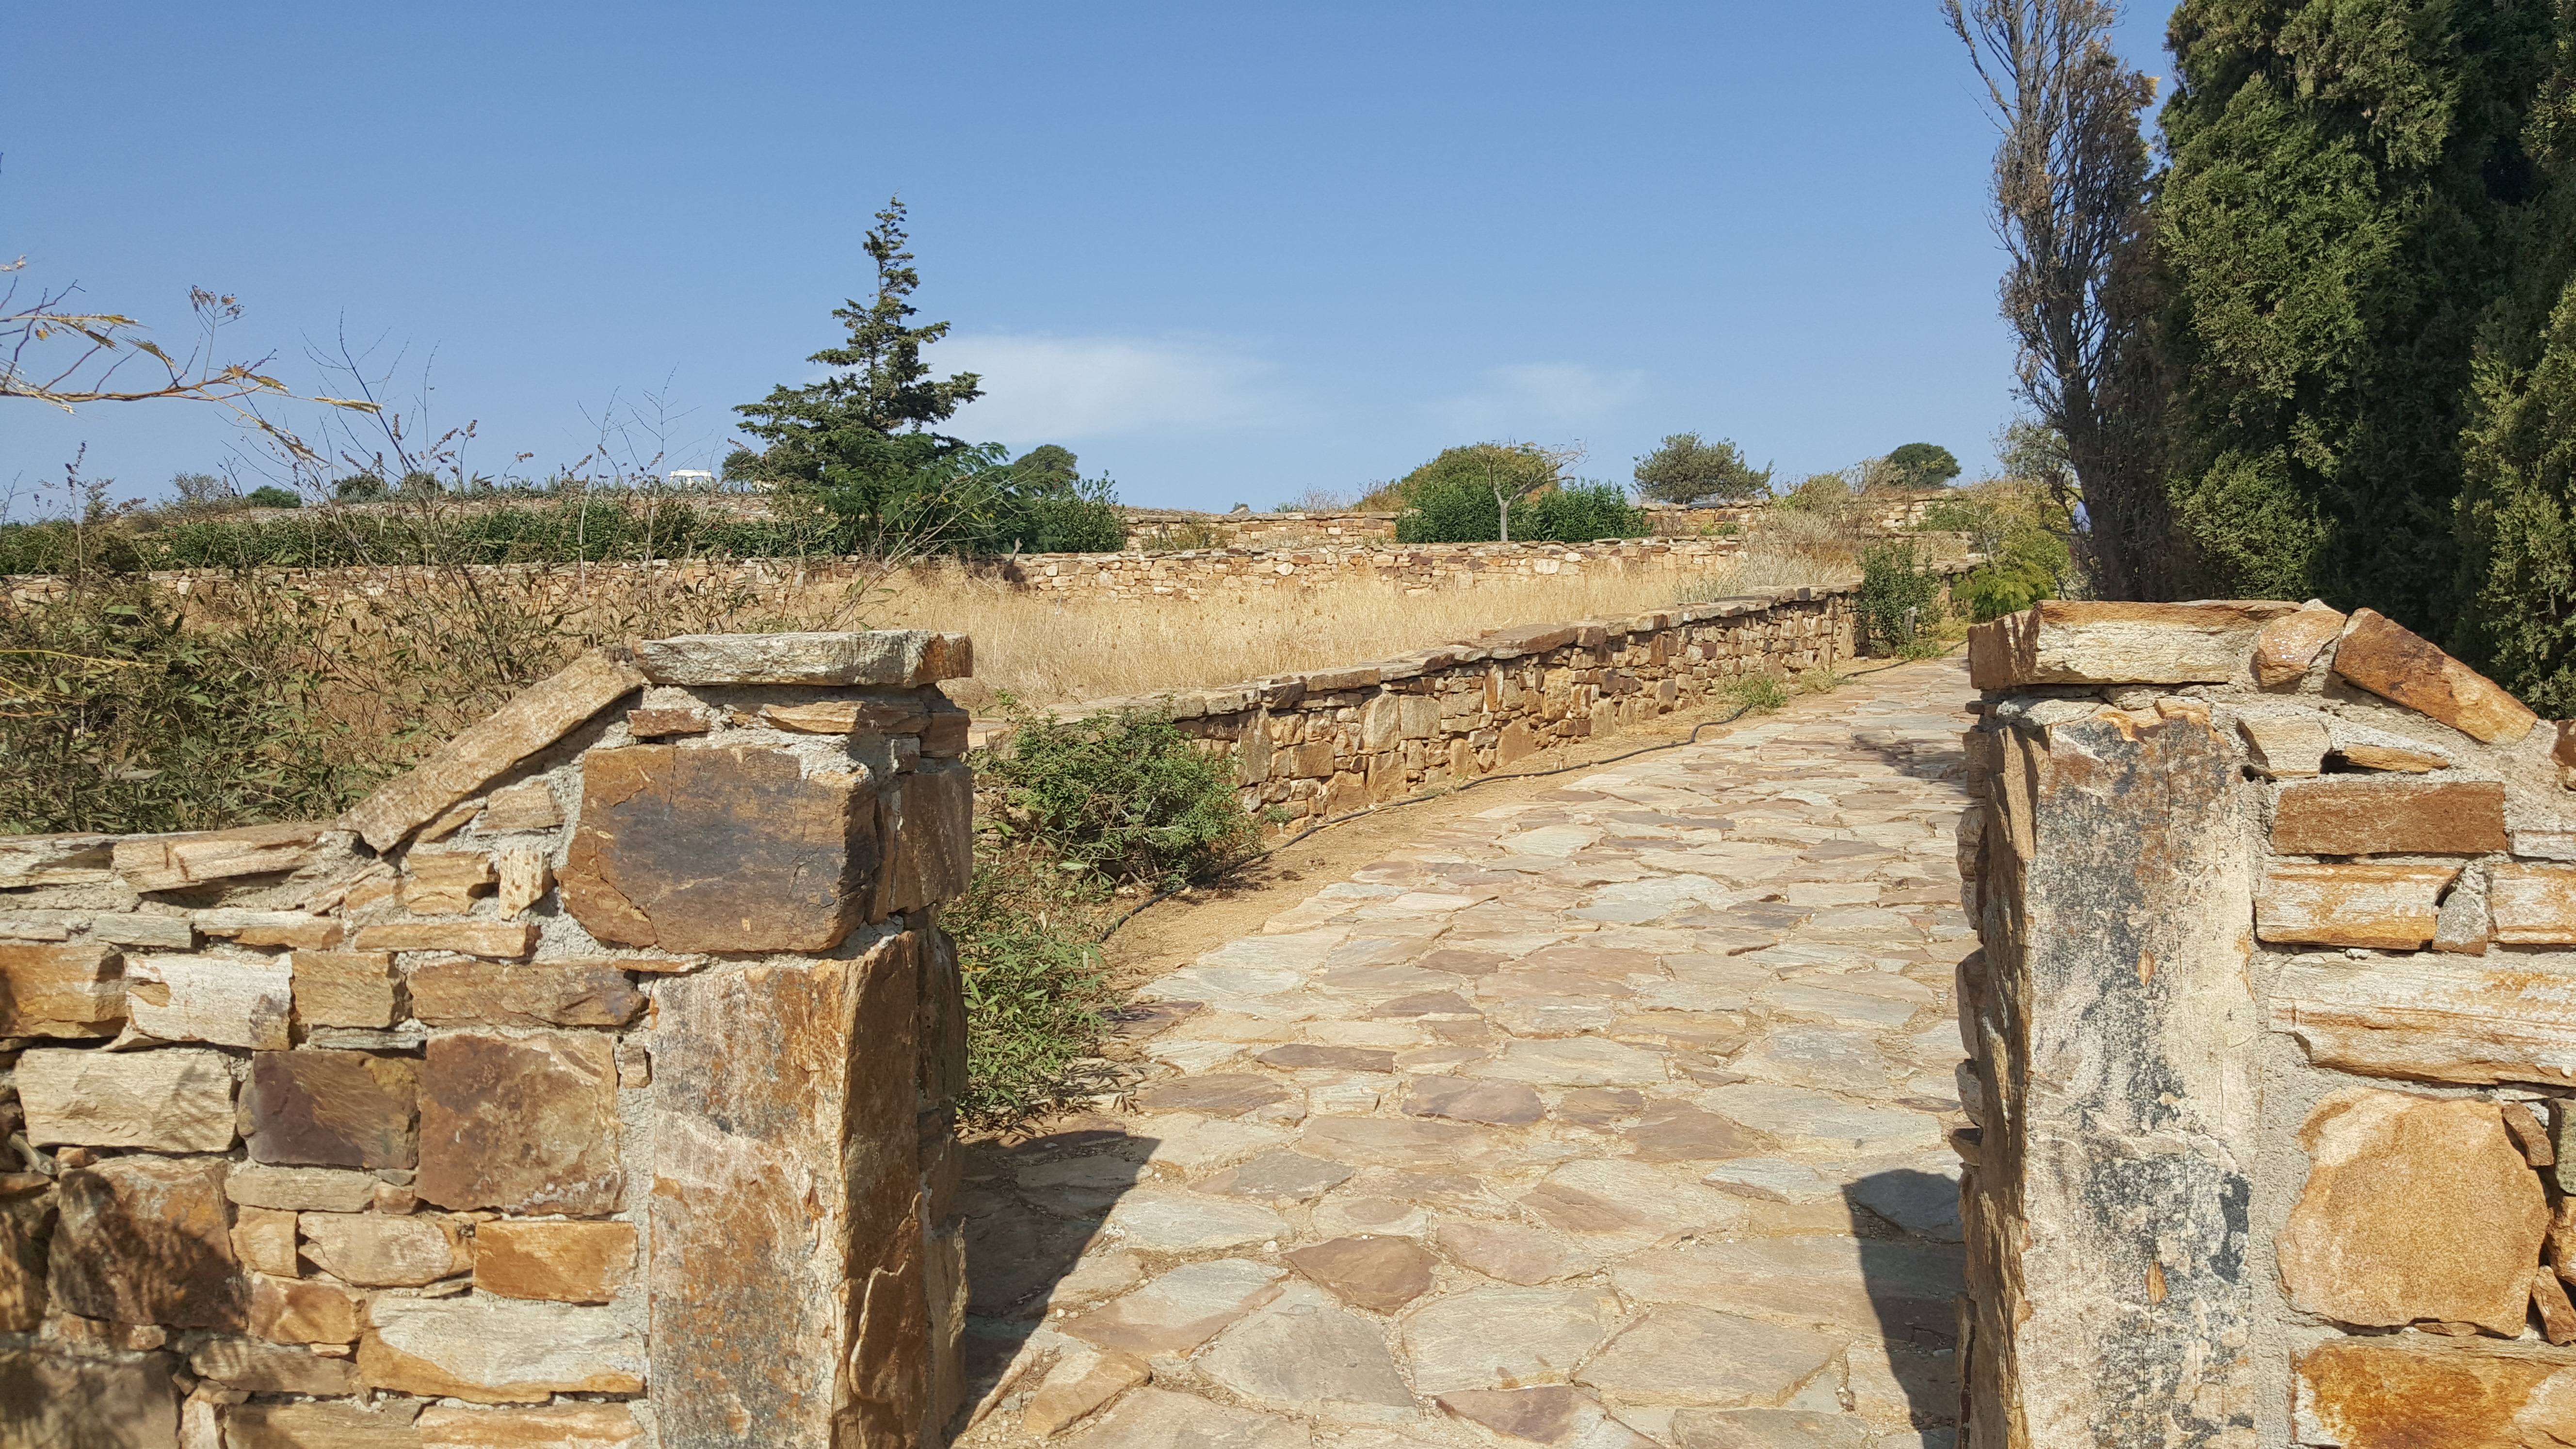 吃完午饭，我们去寻找纳克索斯最重要的古遗址——得墨忒耳神庙（Dimitra’s temple），得墨